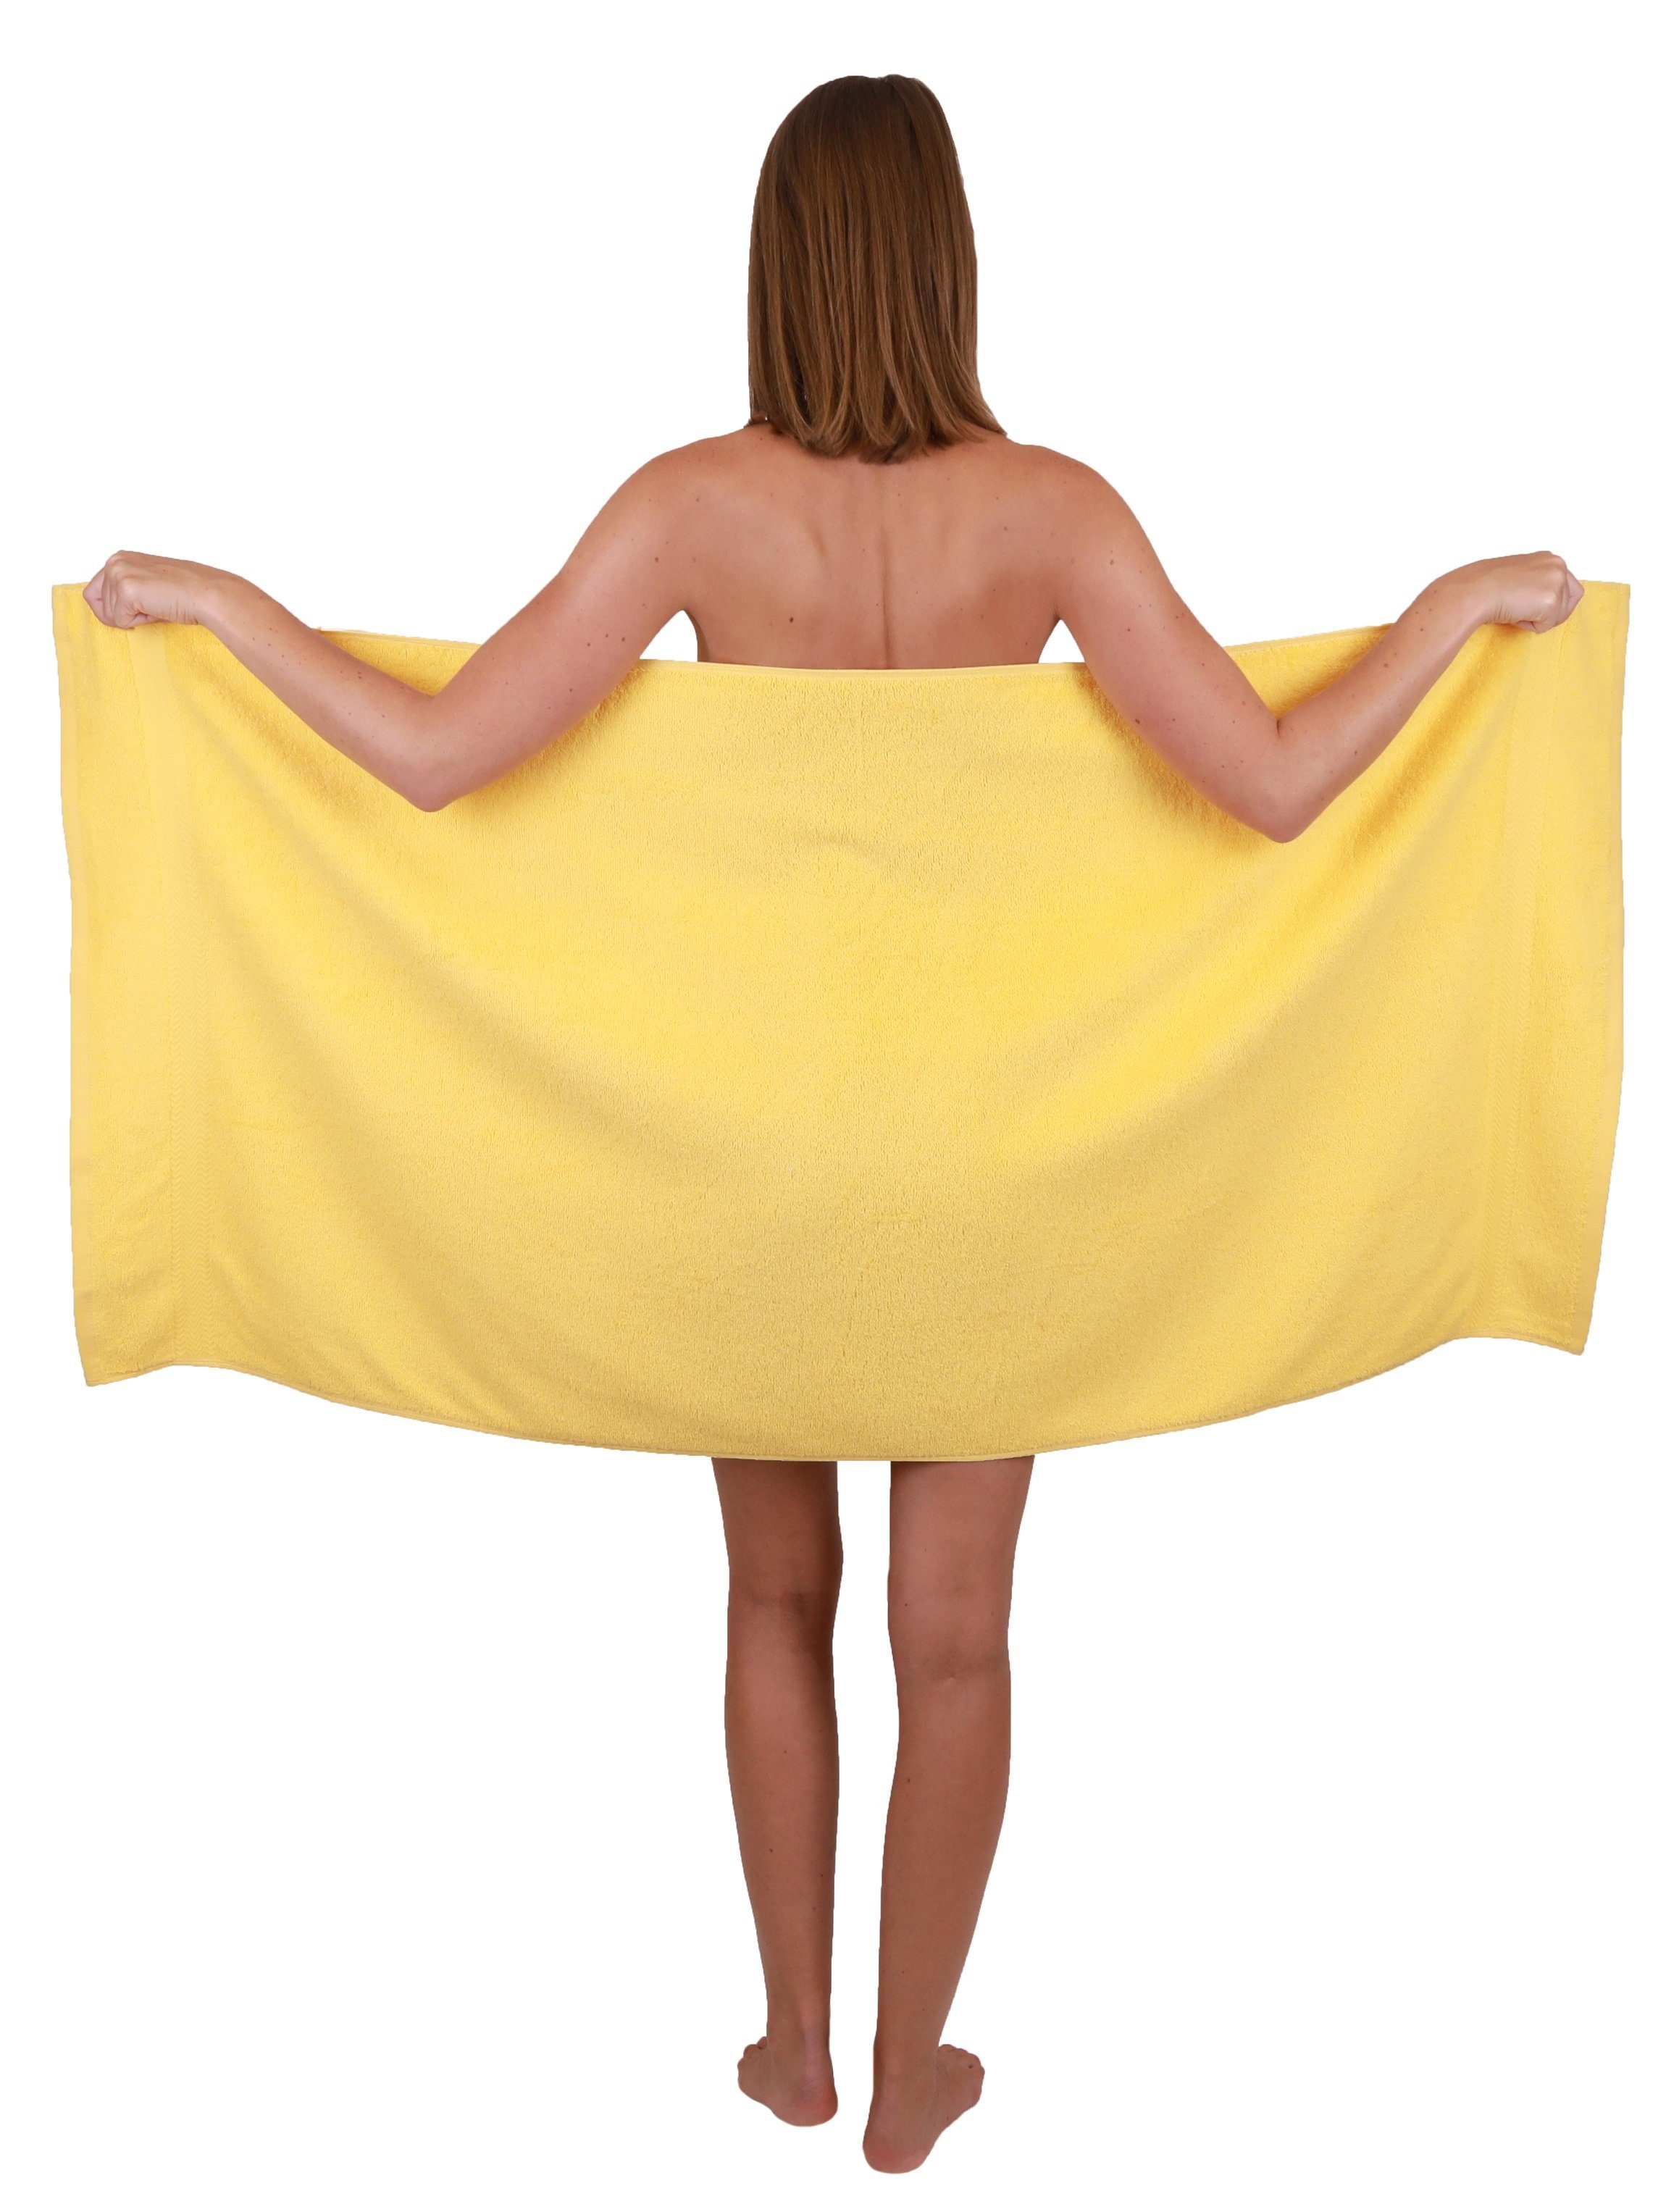 Gelb Premium Altrosa, Betz Handtuch Set Baumwolle, (10-tlg) & 10-TLG. Handtuch-Set 100% Farbe